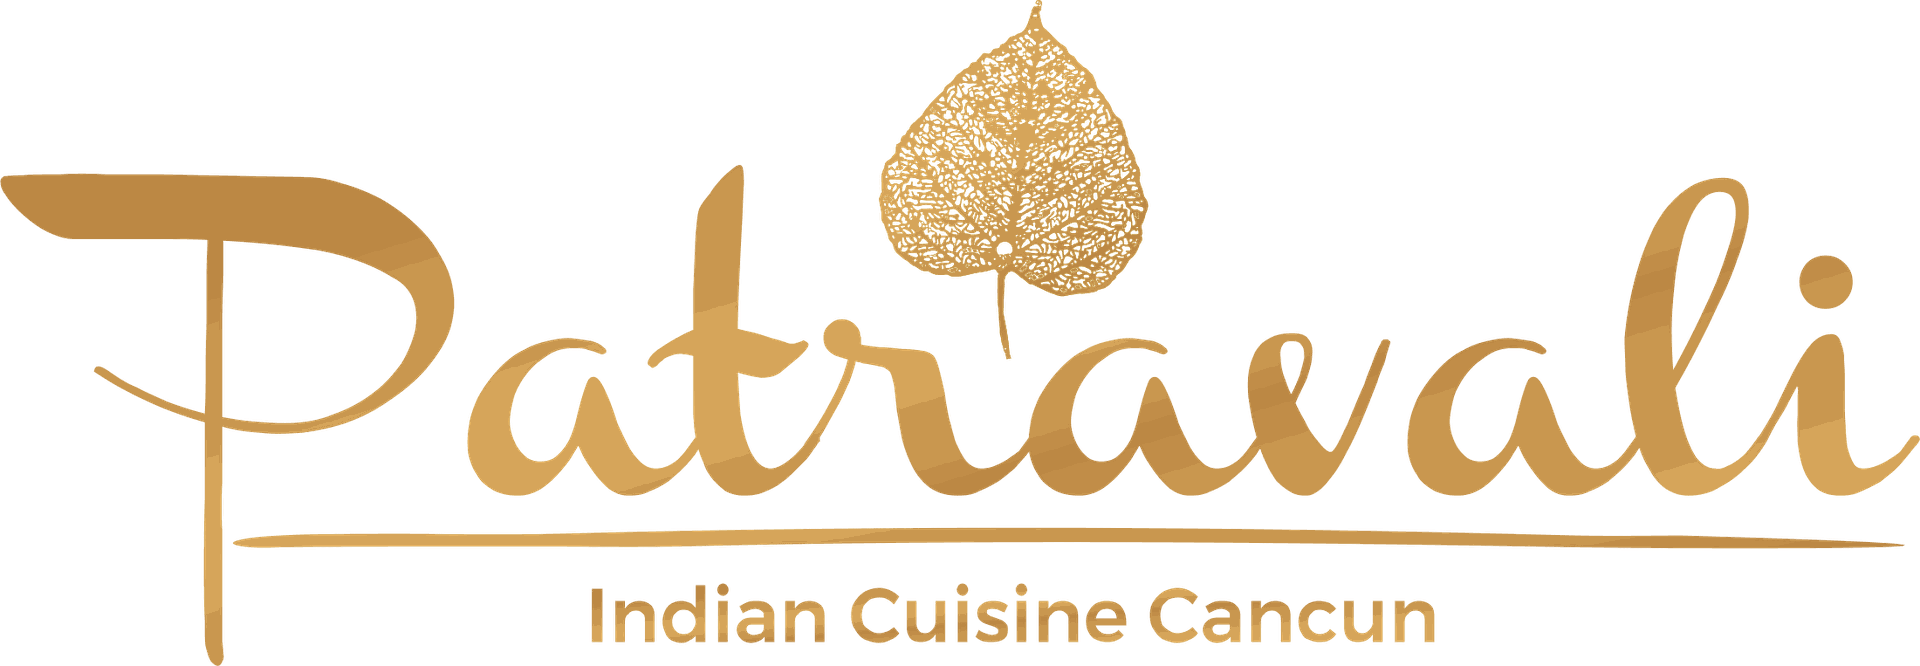 Patravali Indian Cuisine